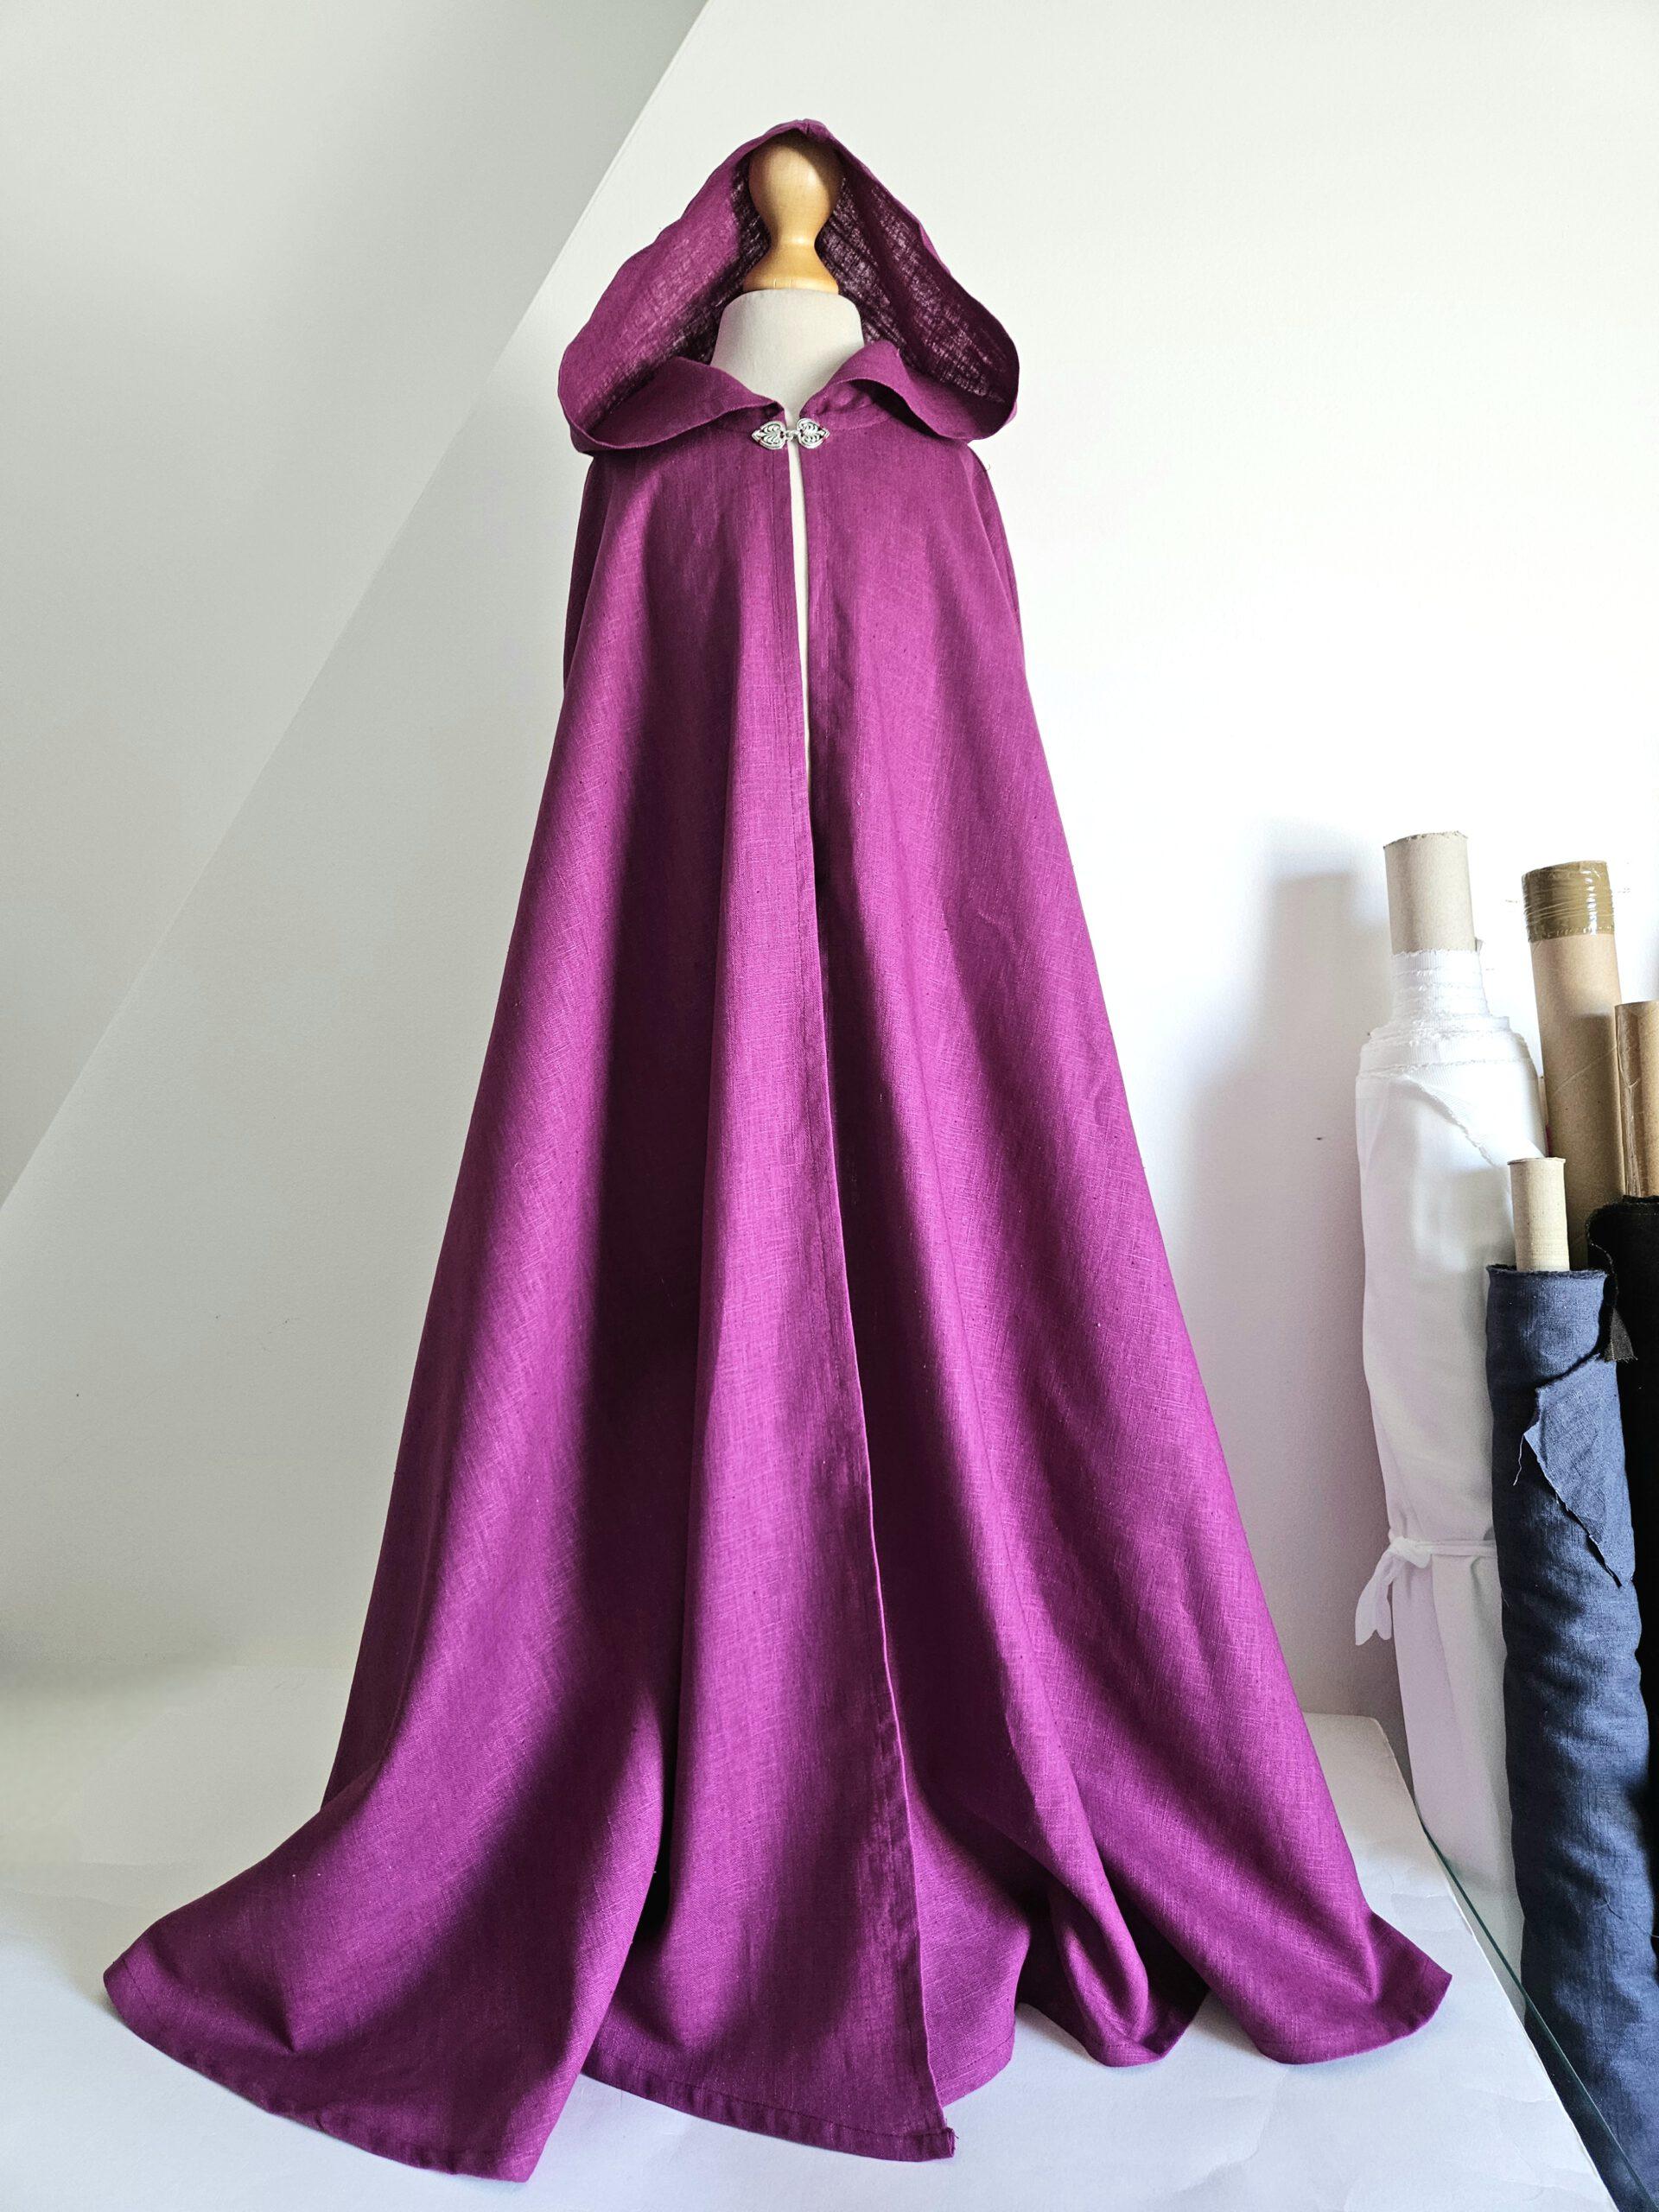 Atelier Spatz pure linen medieval princess cloak cape